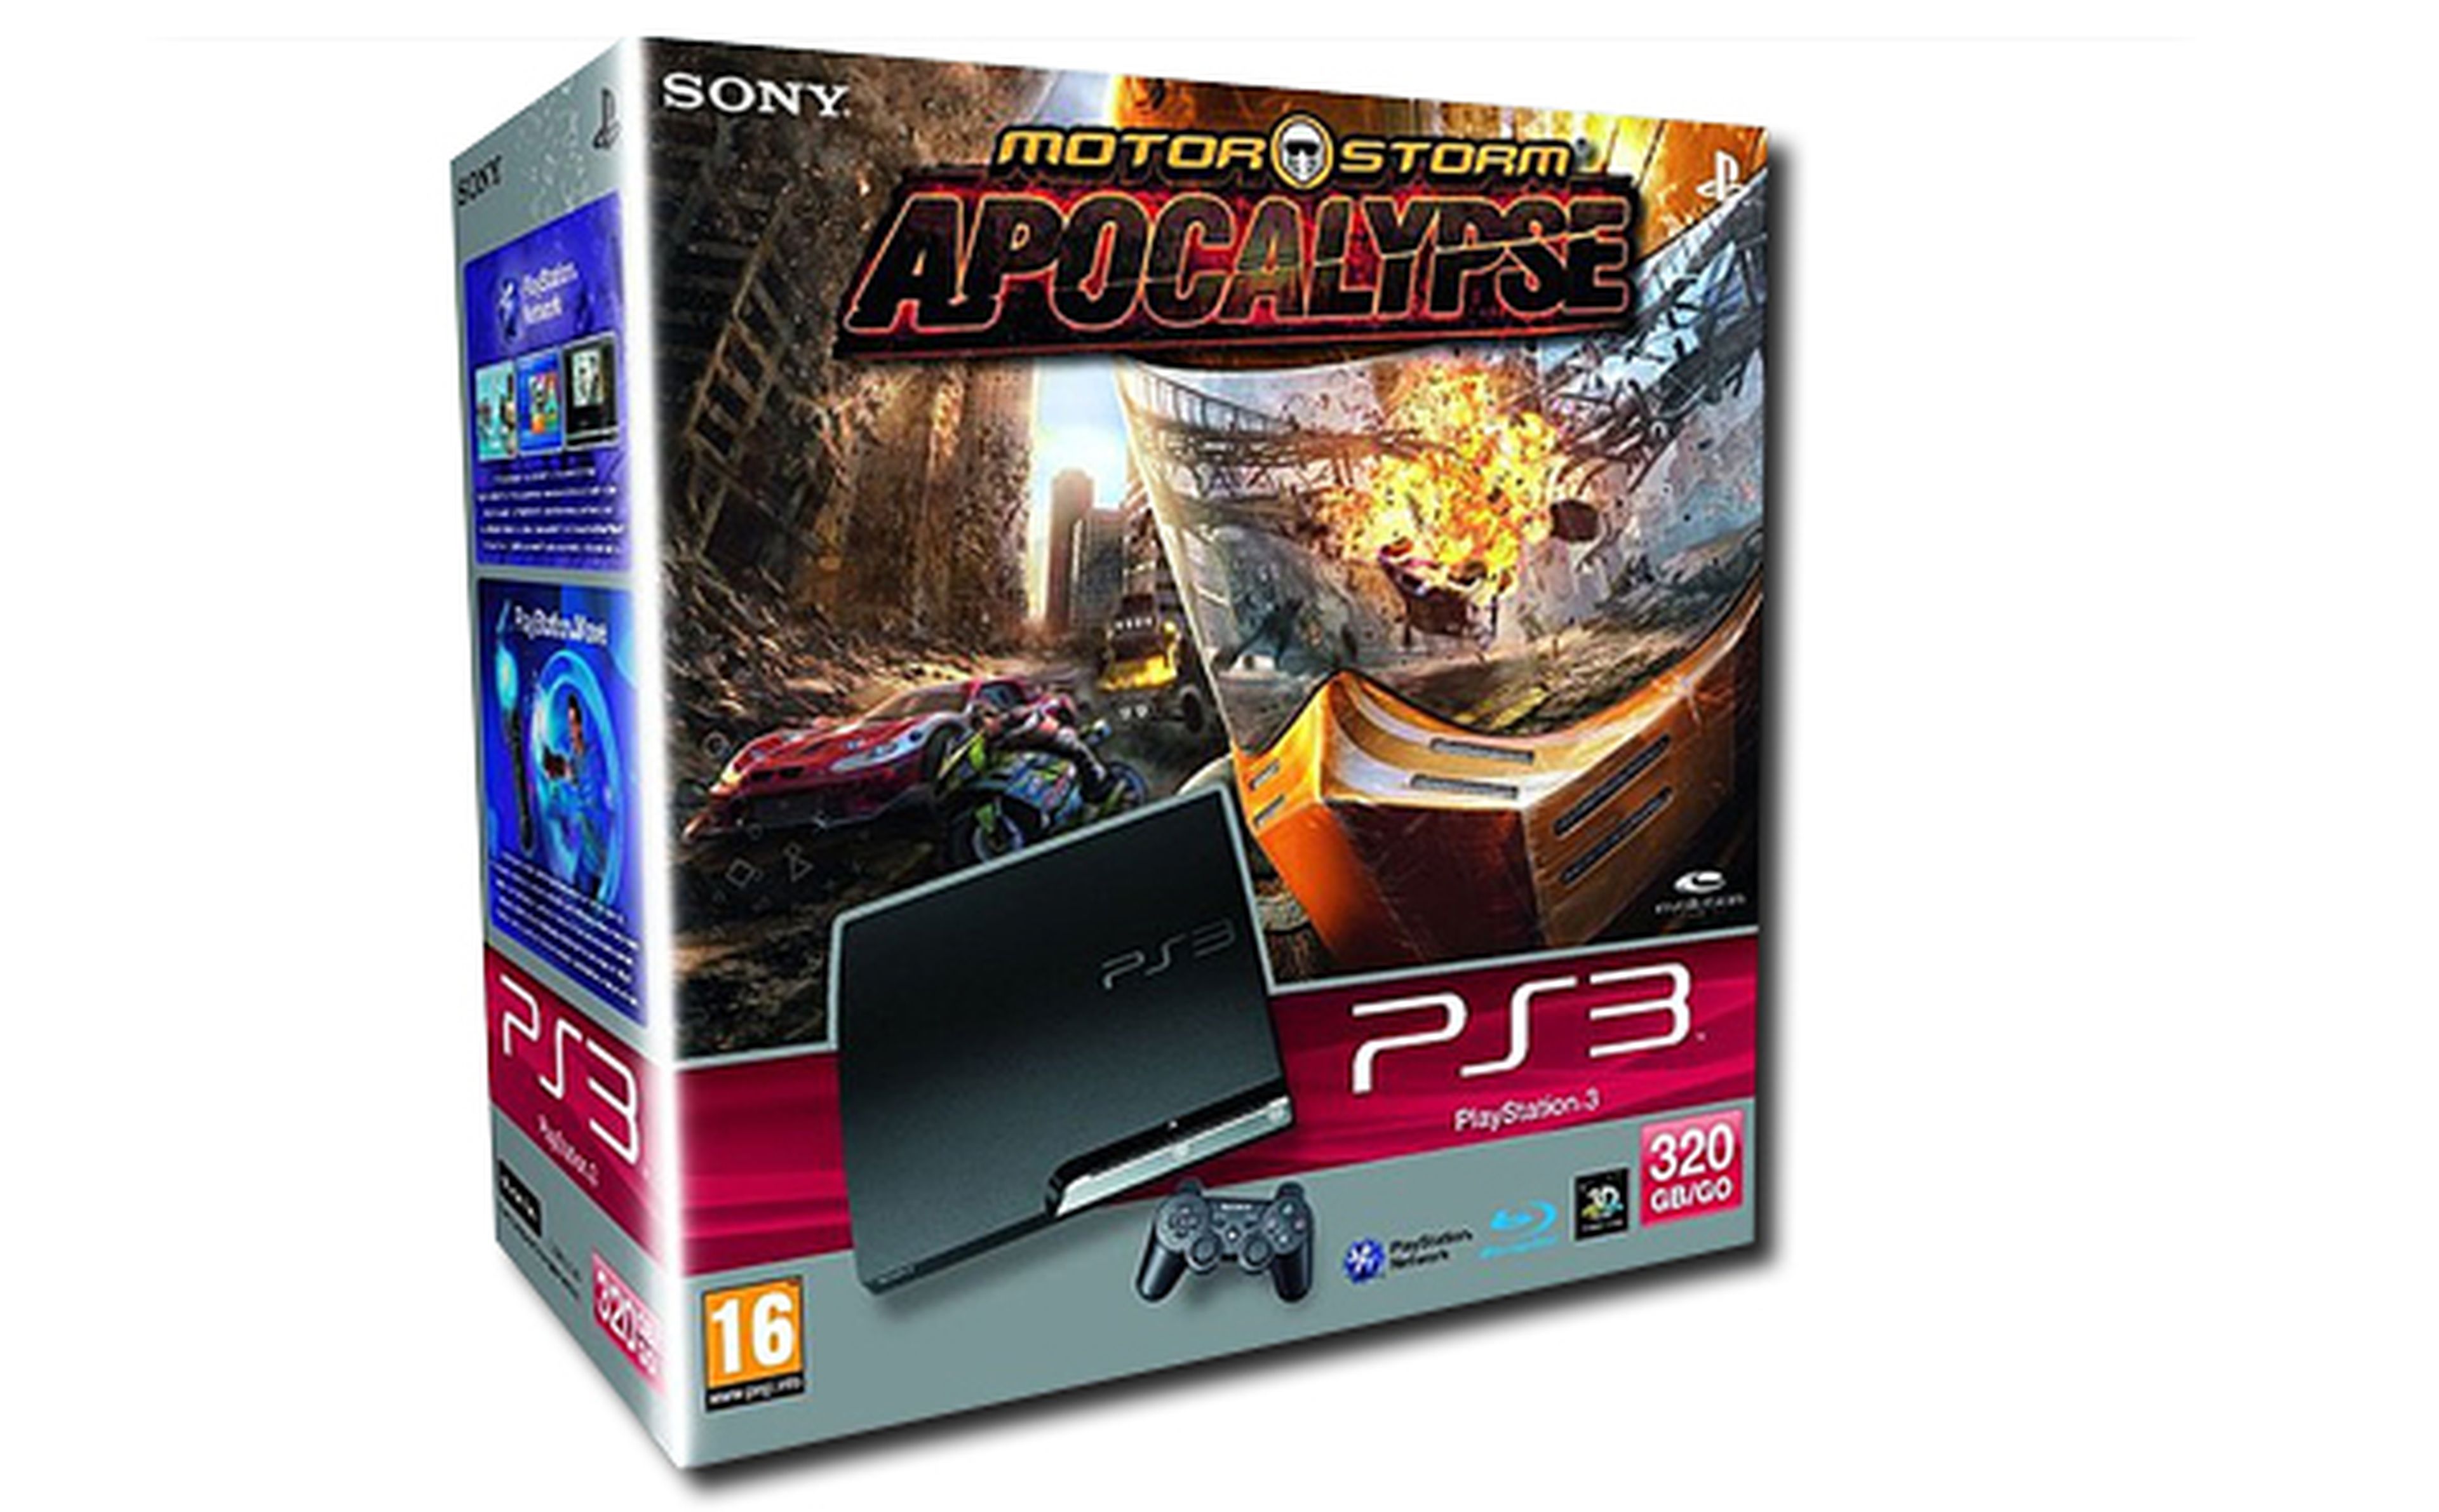 Pack PS3 320GB y MotorStorm Apocalypse